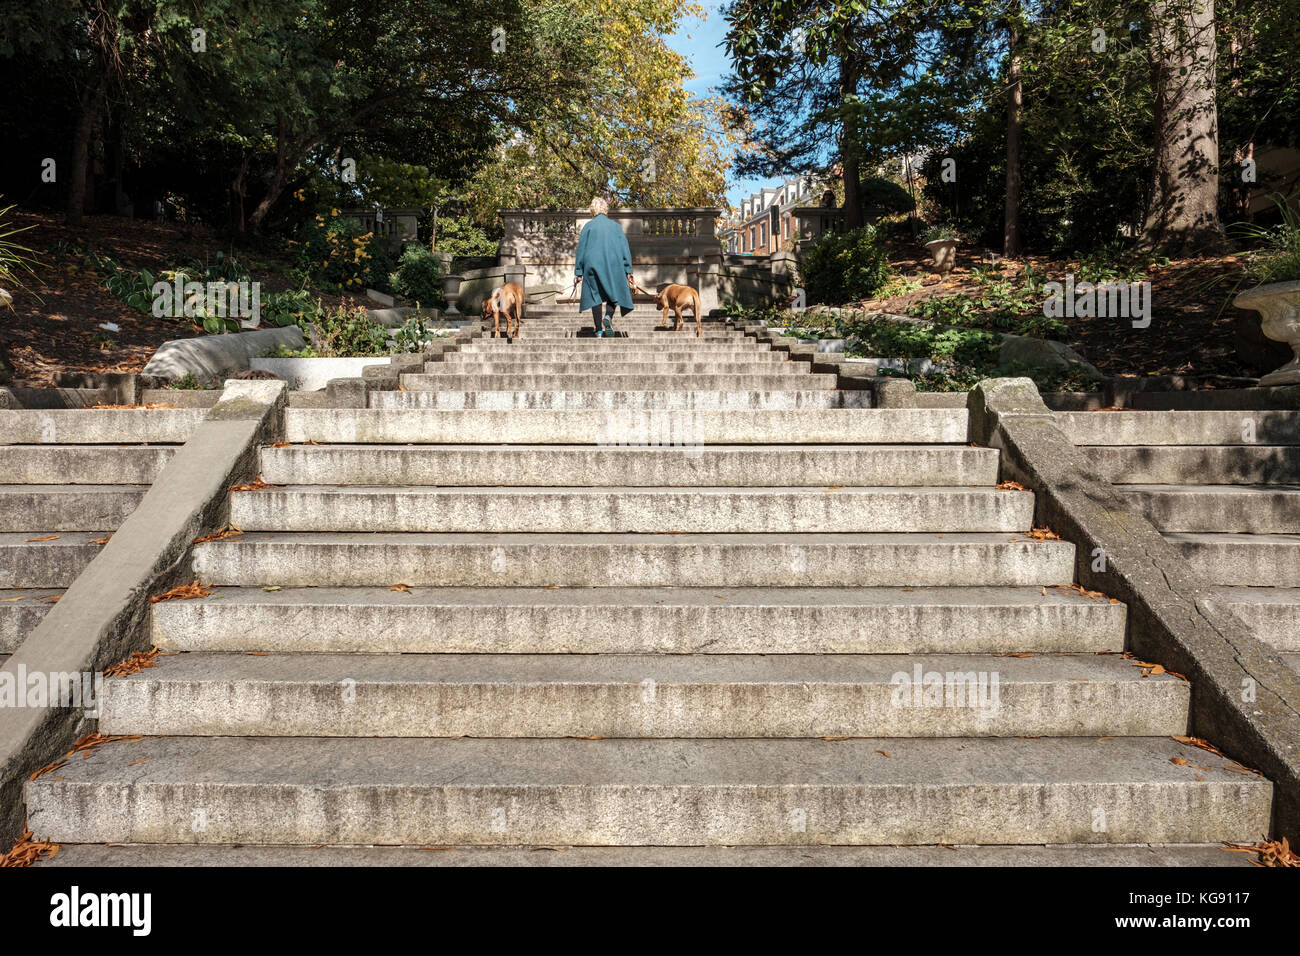 Donna, cani, Piazza di Spagna, l'unico parco di D.C. ad occupare una strada cittadina. Un passaggio pedonale nel quartiere Kalorama di Washington DC, USA. Foto Stock